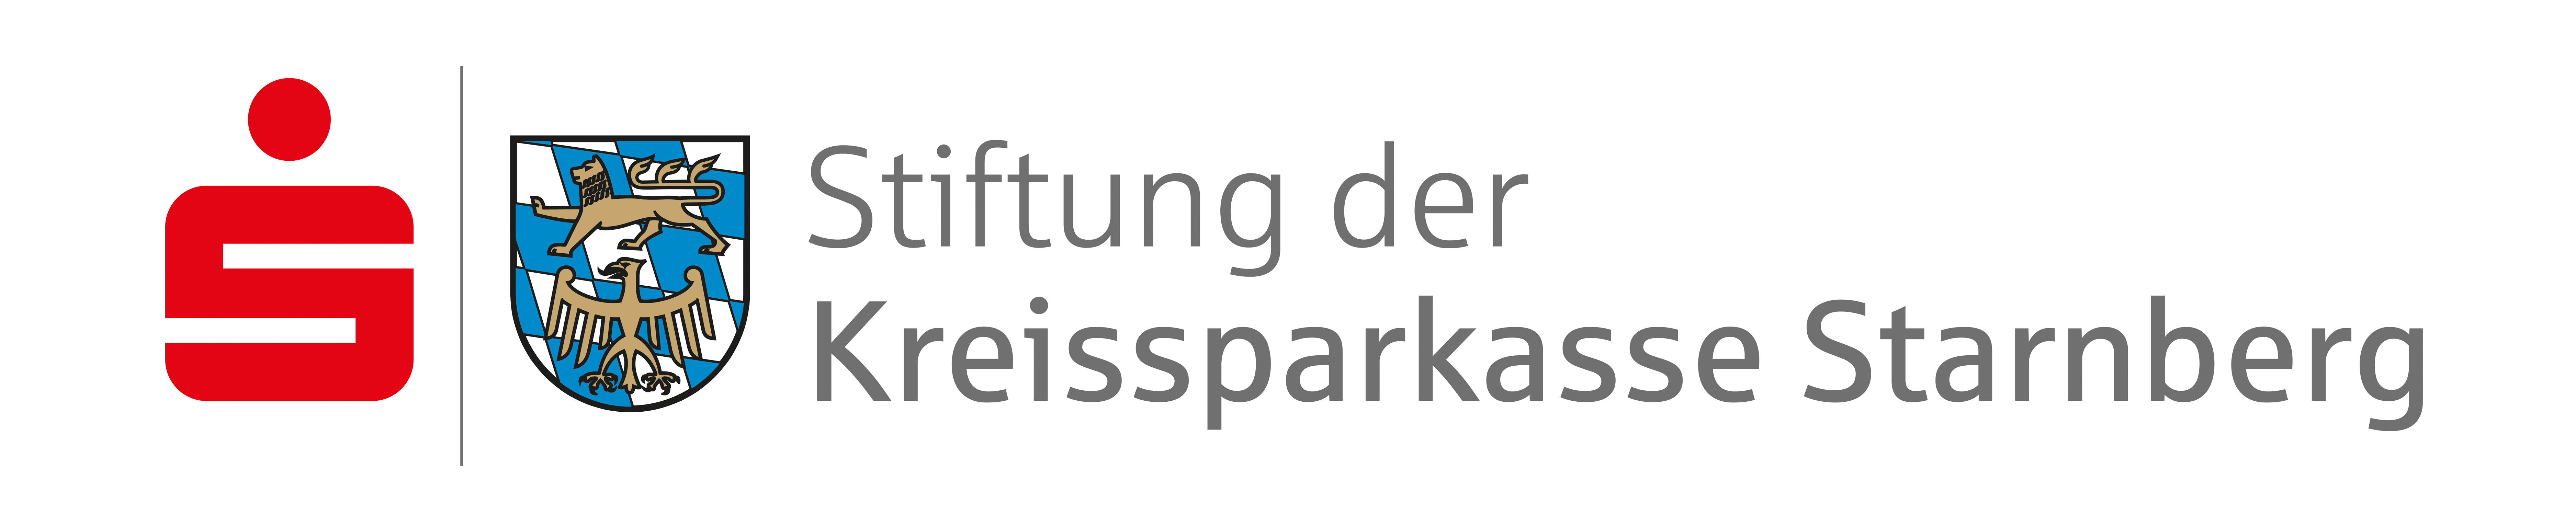 Logo Stiftung Starnberg mHintergrund